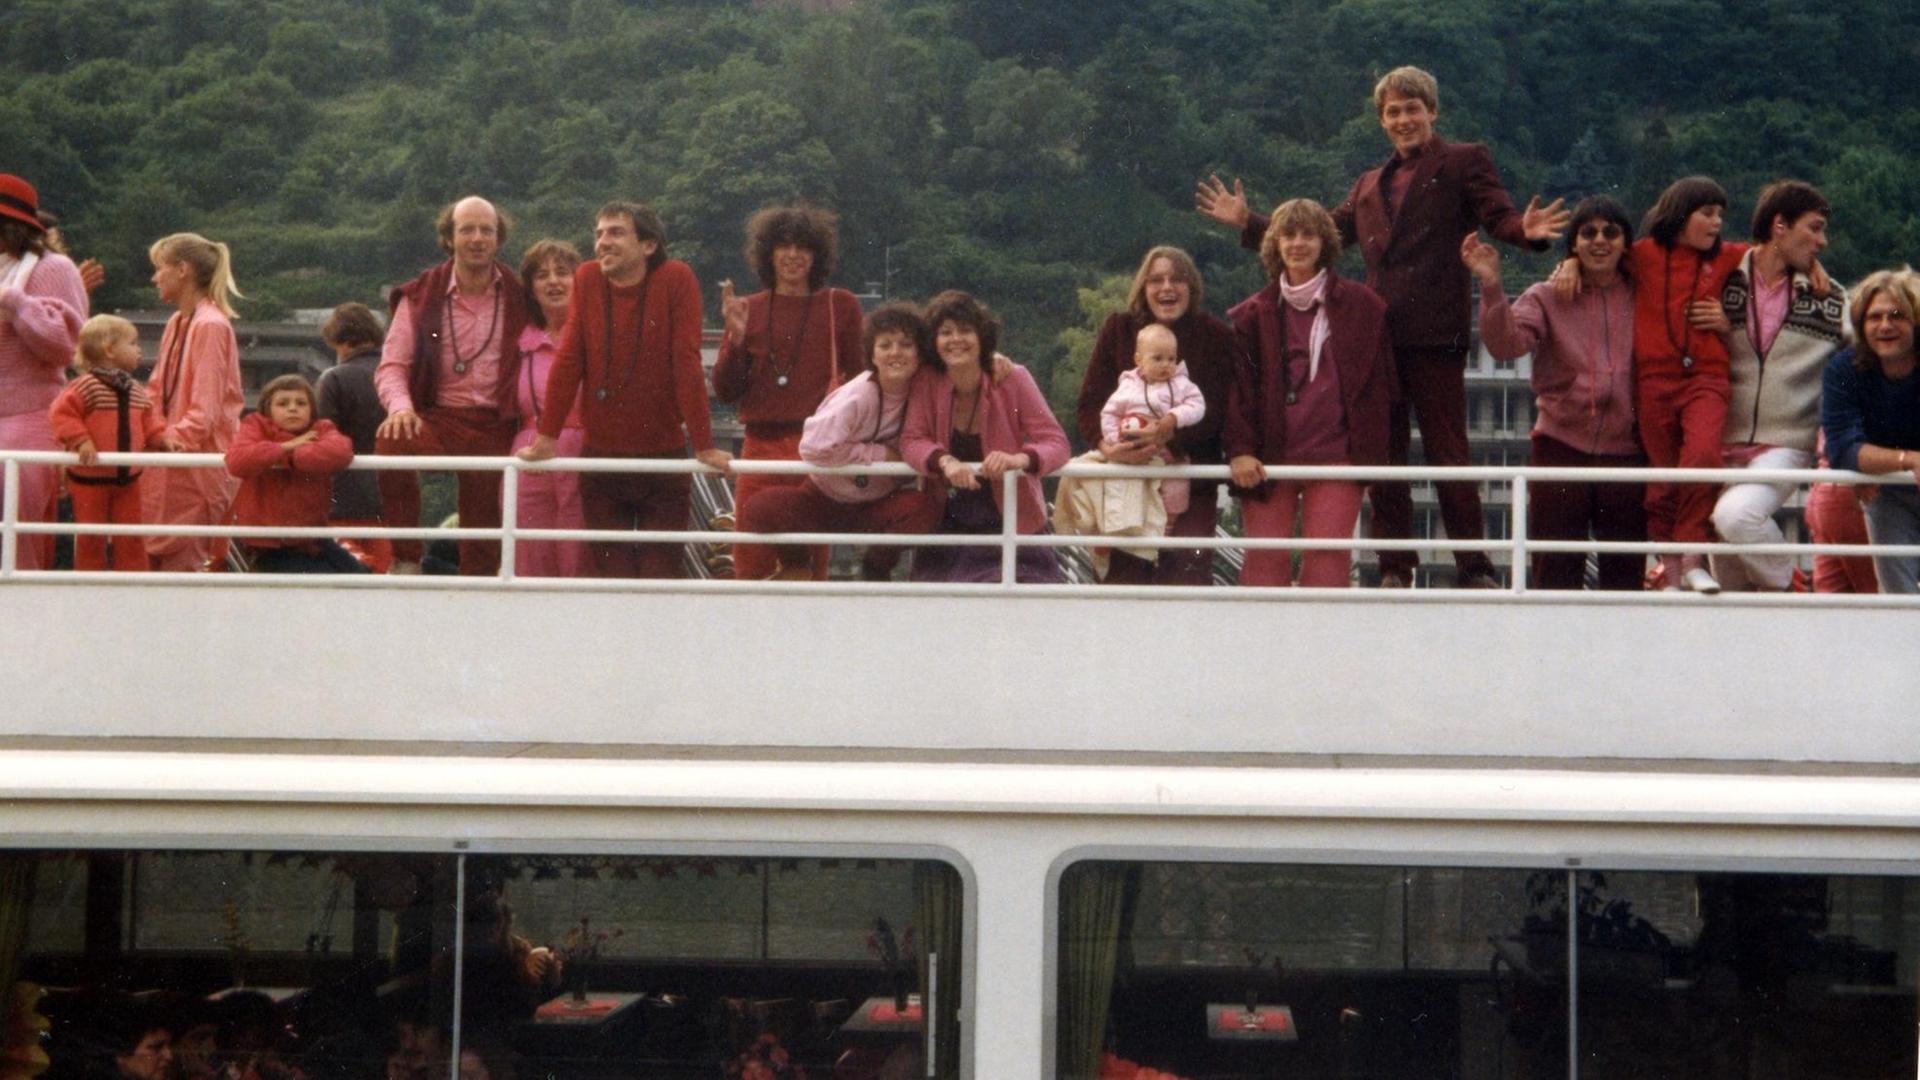 Menschen in roter und pinker Freizeitkleidung posieren auf dem Deck eines Ausflugsschiffs.